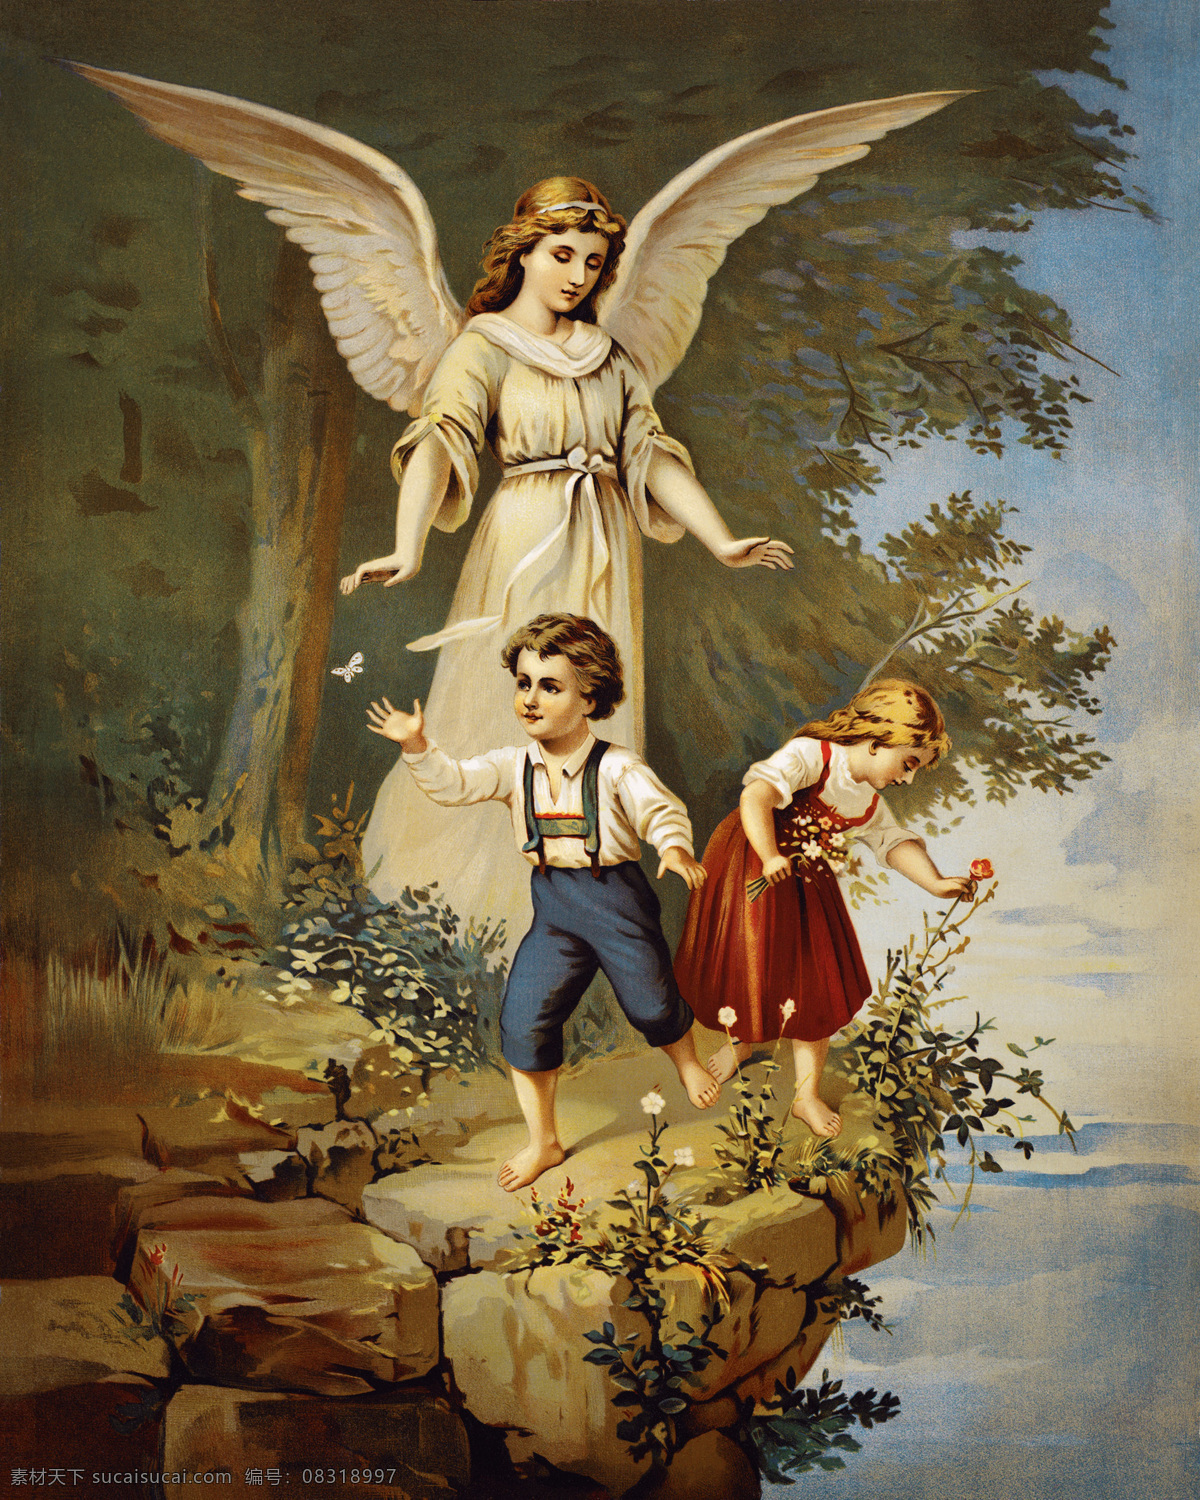 欧洲天使油画 欧洲 天使 小孩 河边 天使翅膀 唯美 油画 水彩画 水粉画 欧式典雅系列 环境设计 无框画